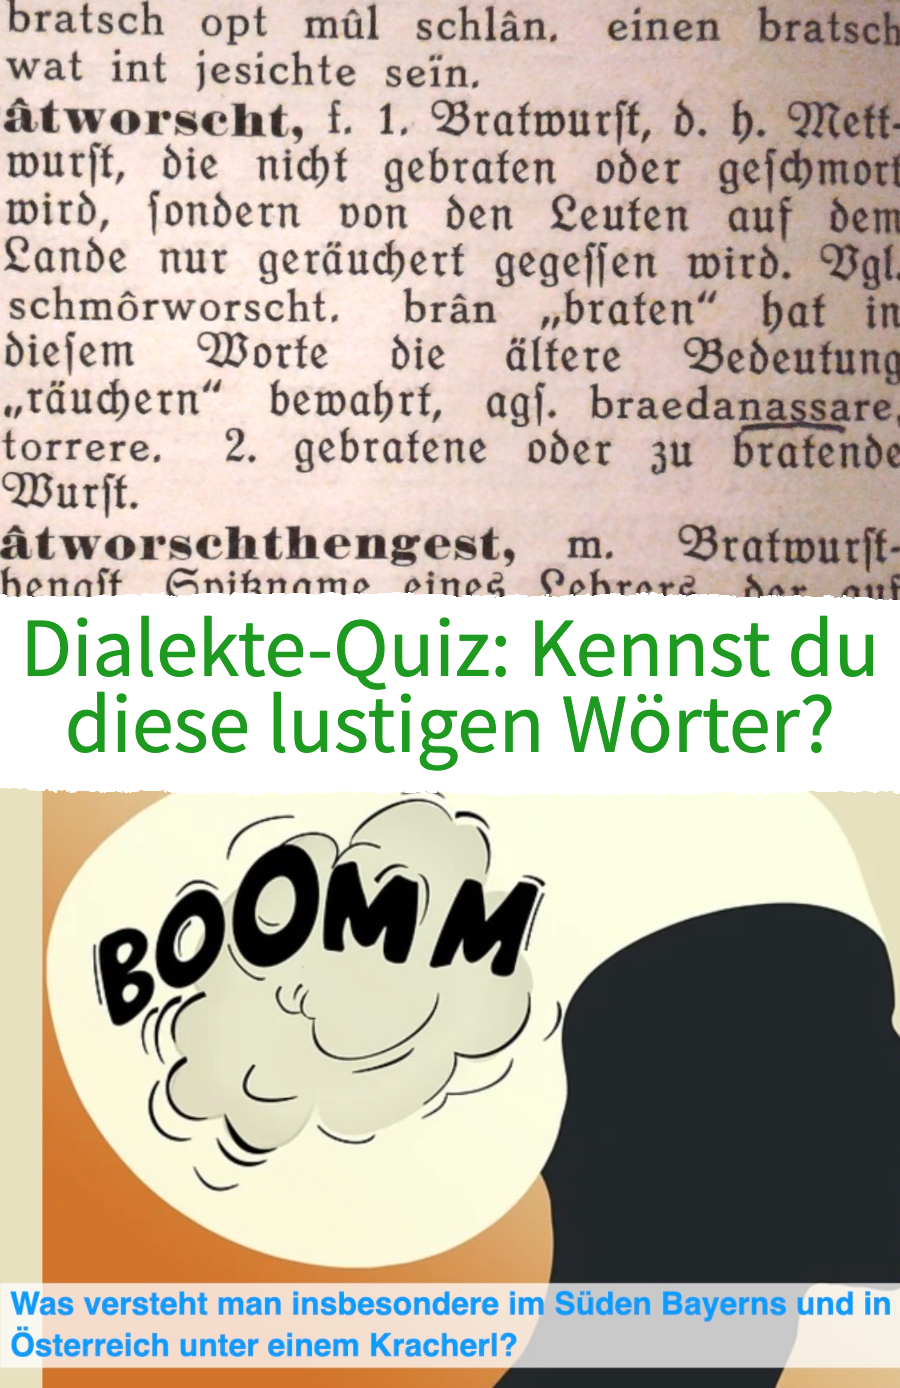 Dialekte-Quiz: Kennst du diese lustigen Wörter?